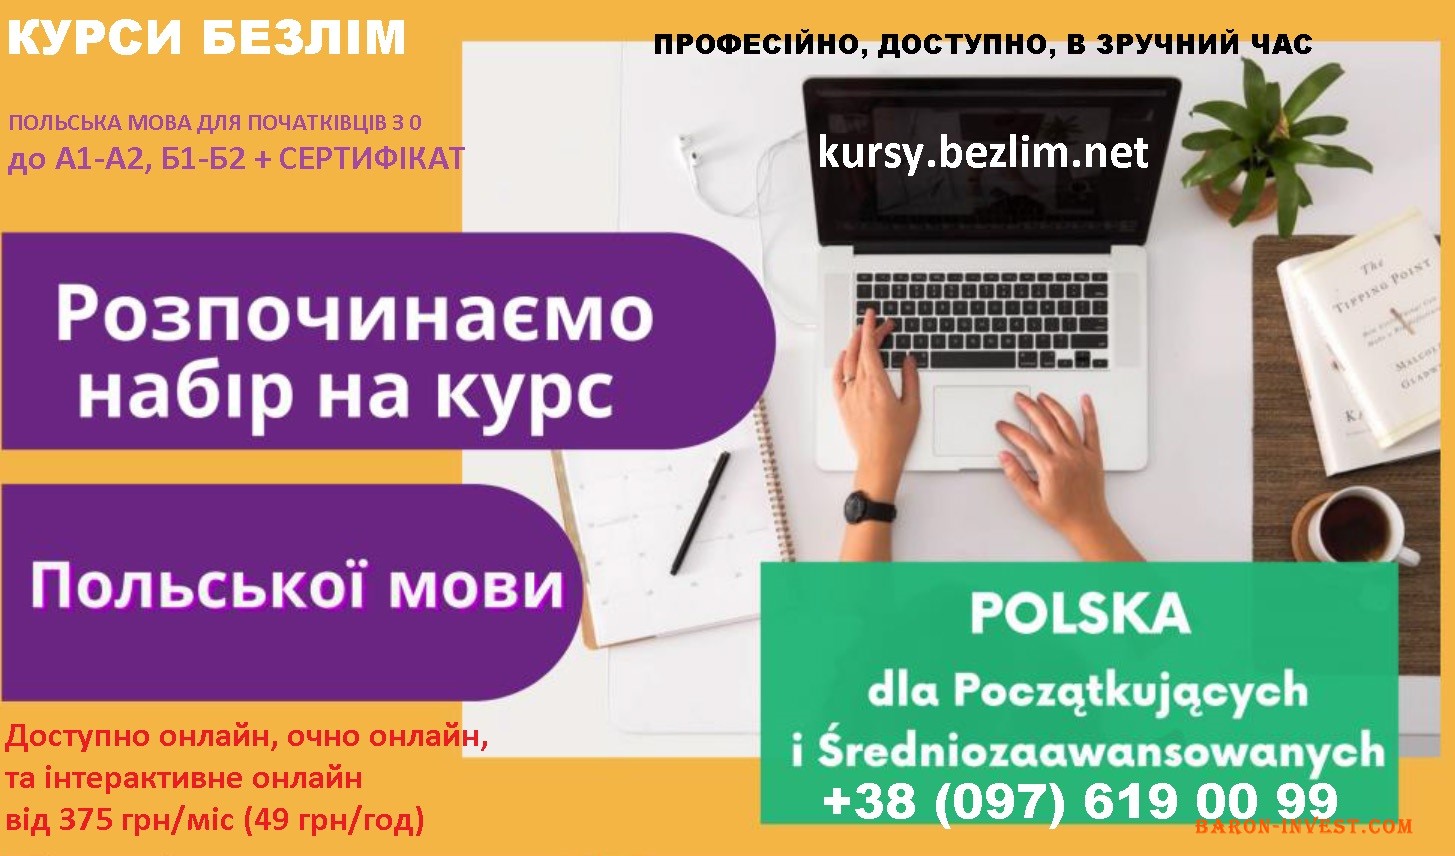 Курси польської мови онлайн з сертифікатом